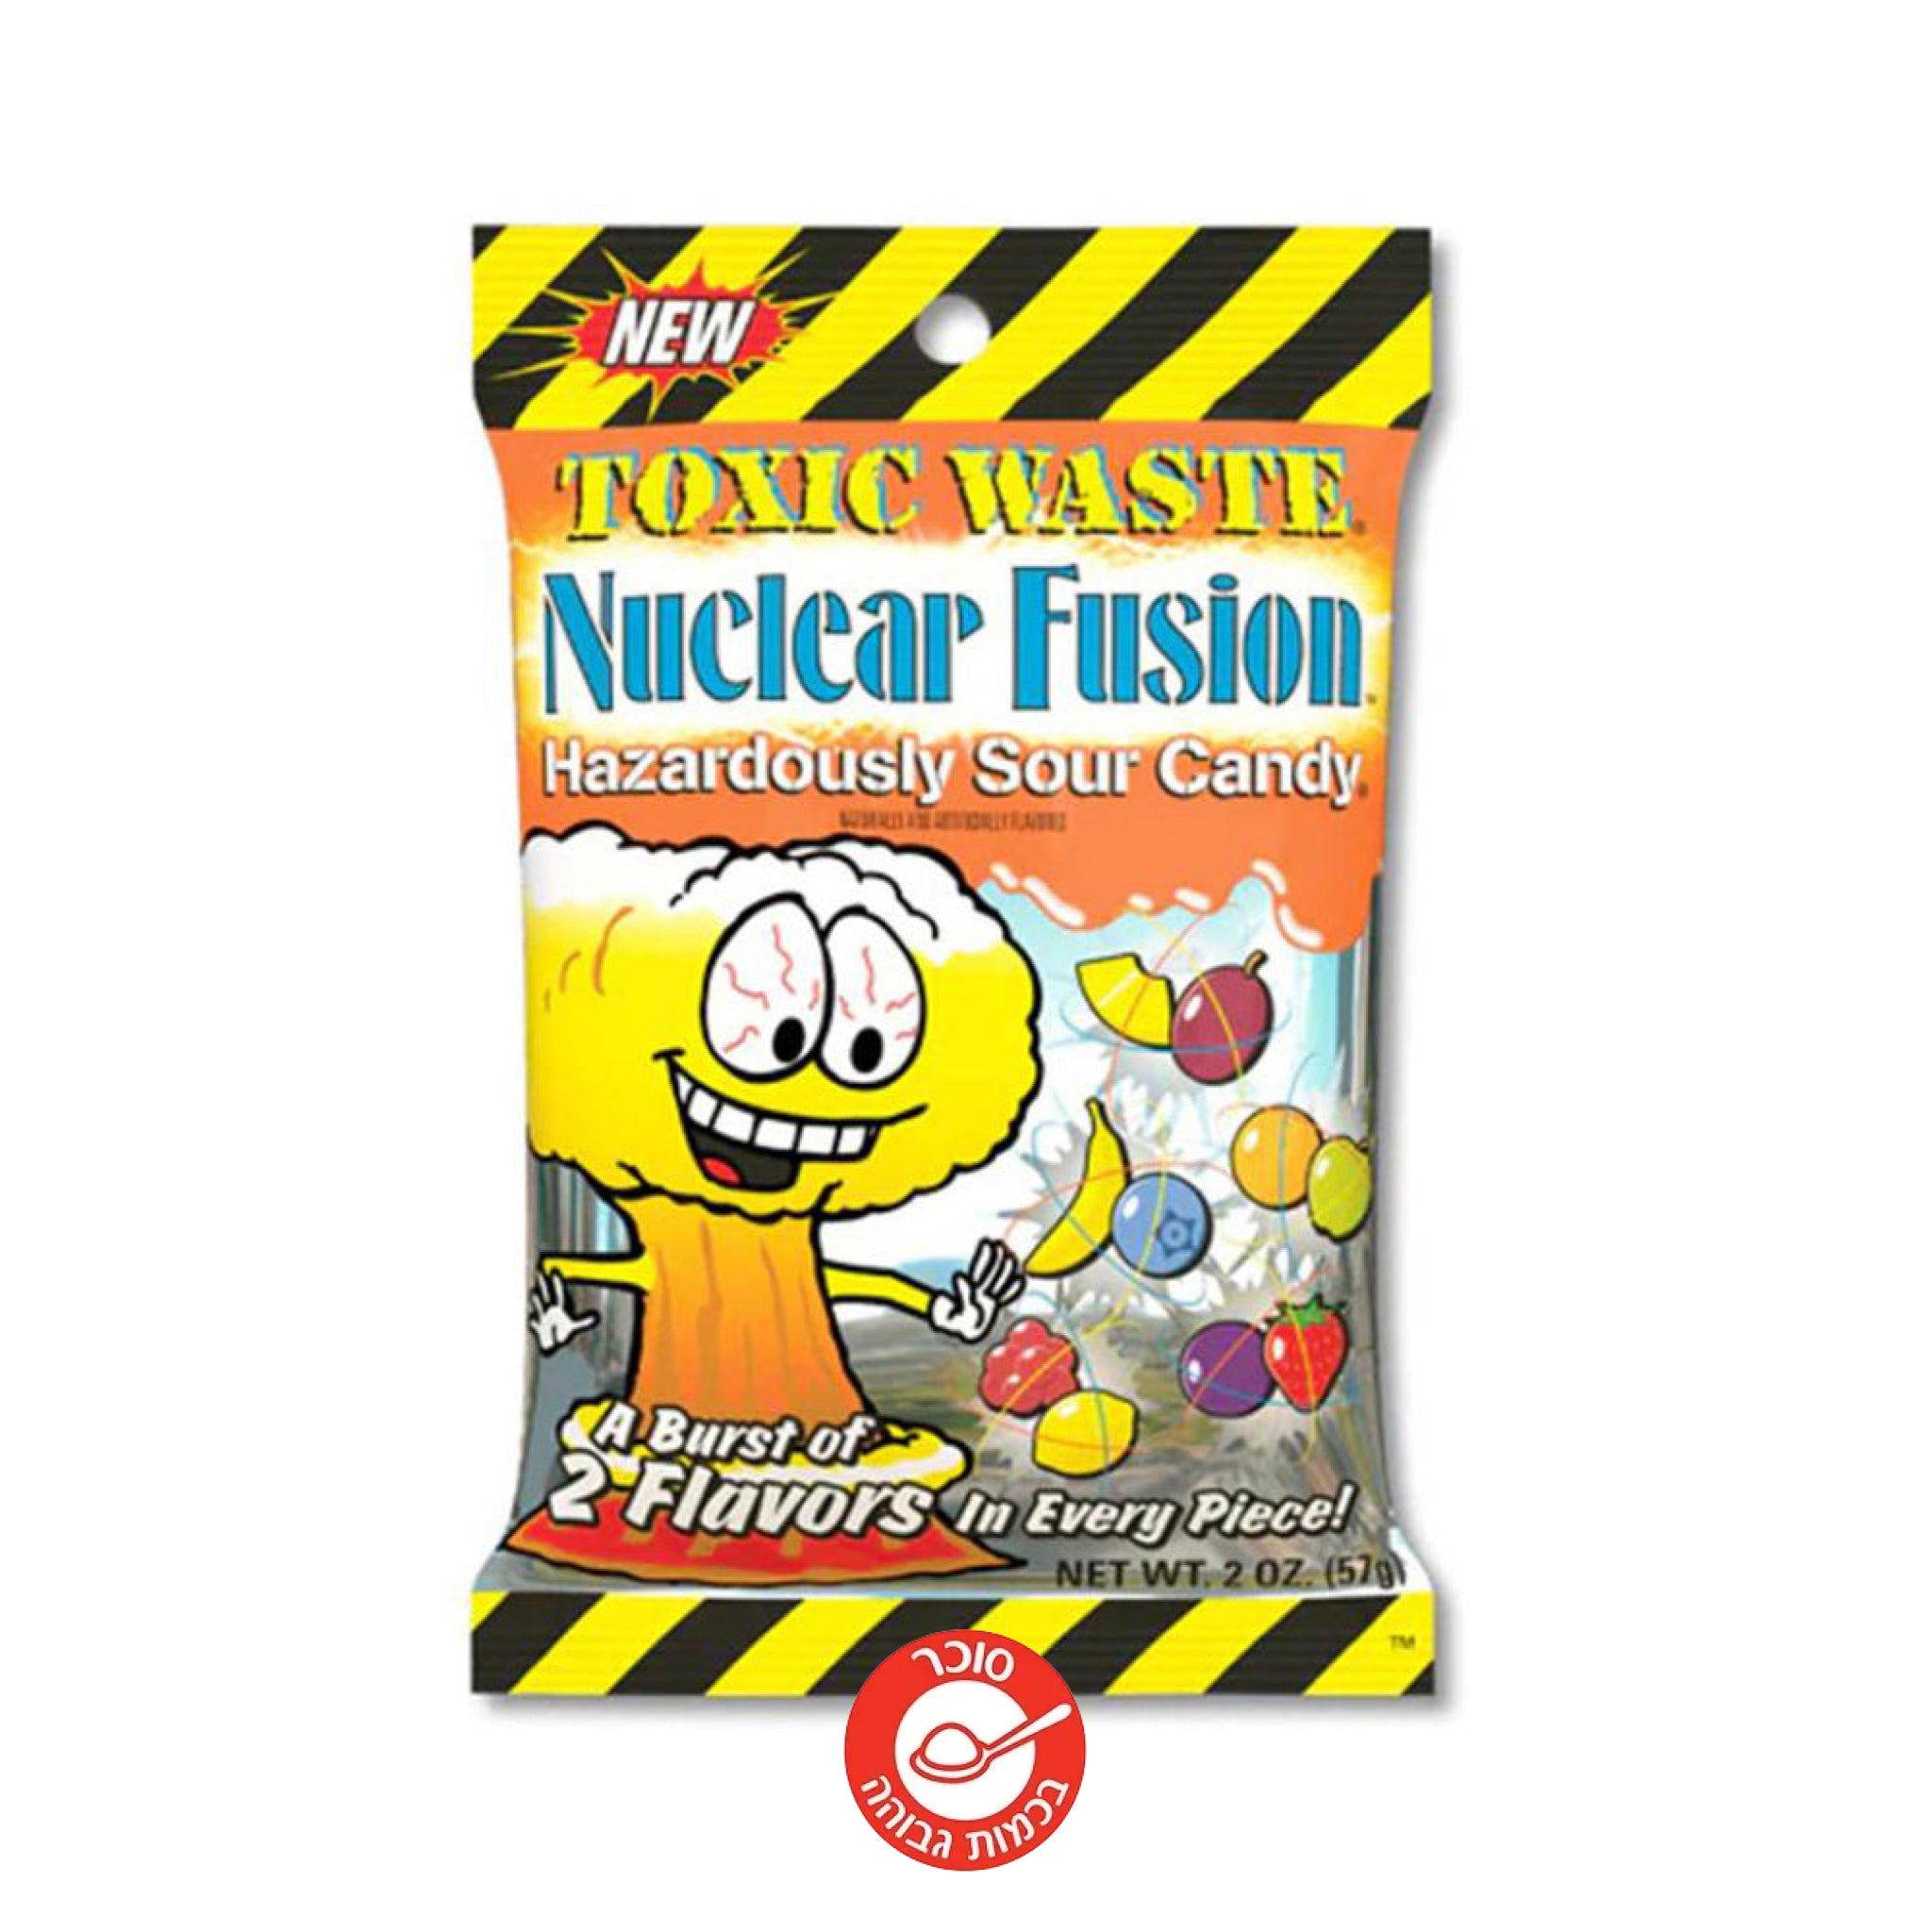 Toxic Waste Nuclear Fusion סוכריות חמוצות אטומי בשני טעמים